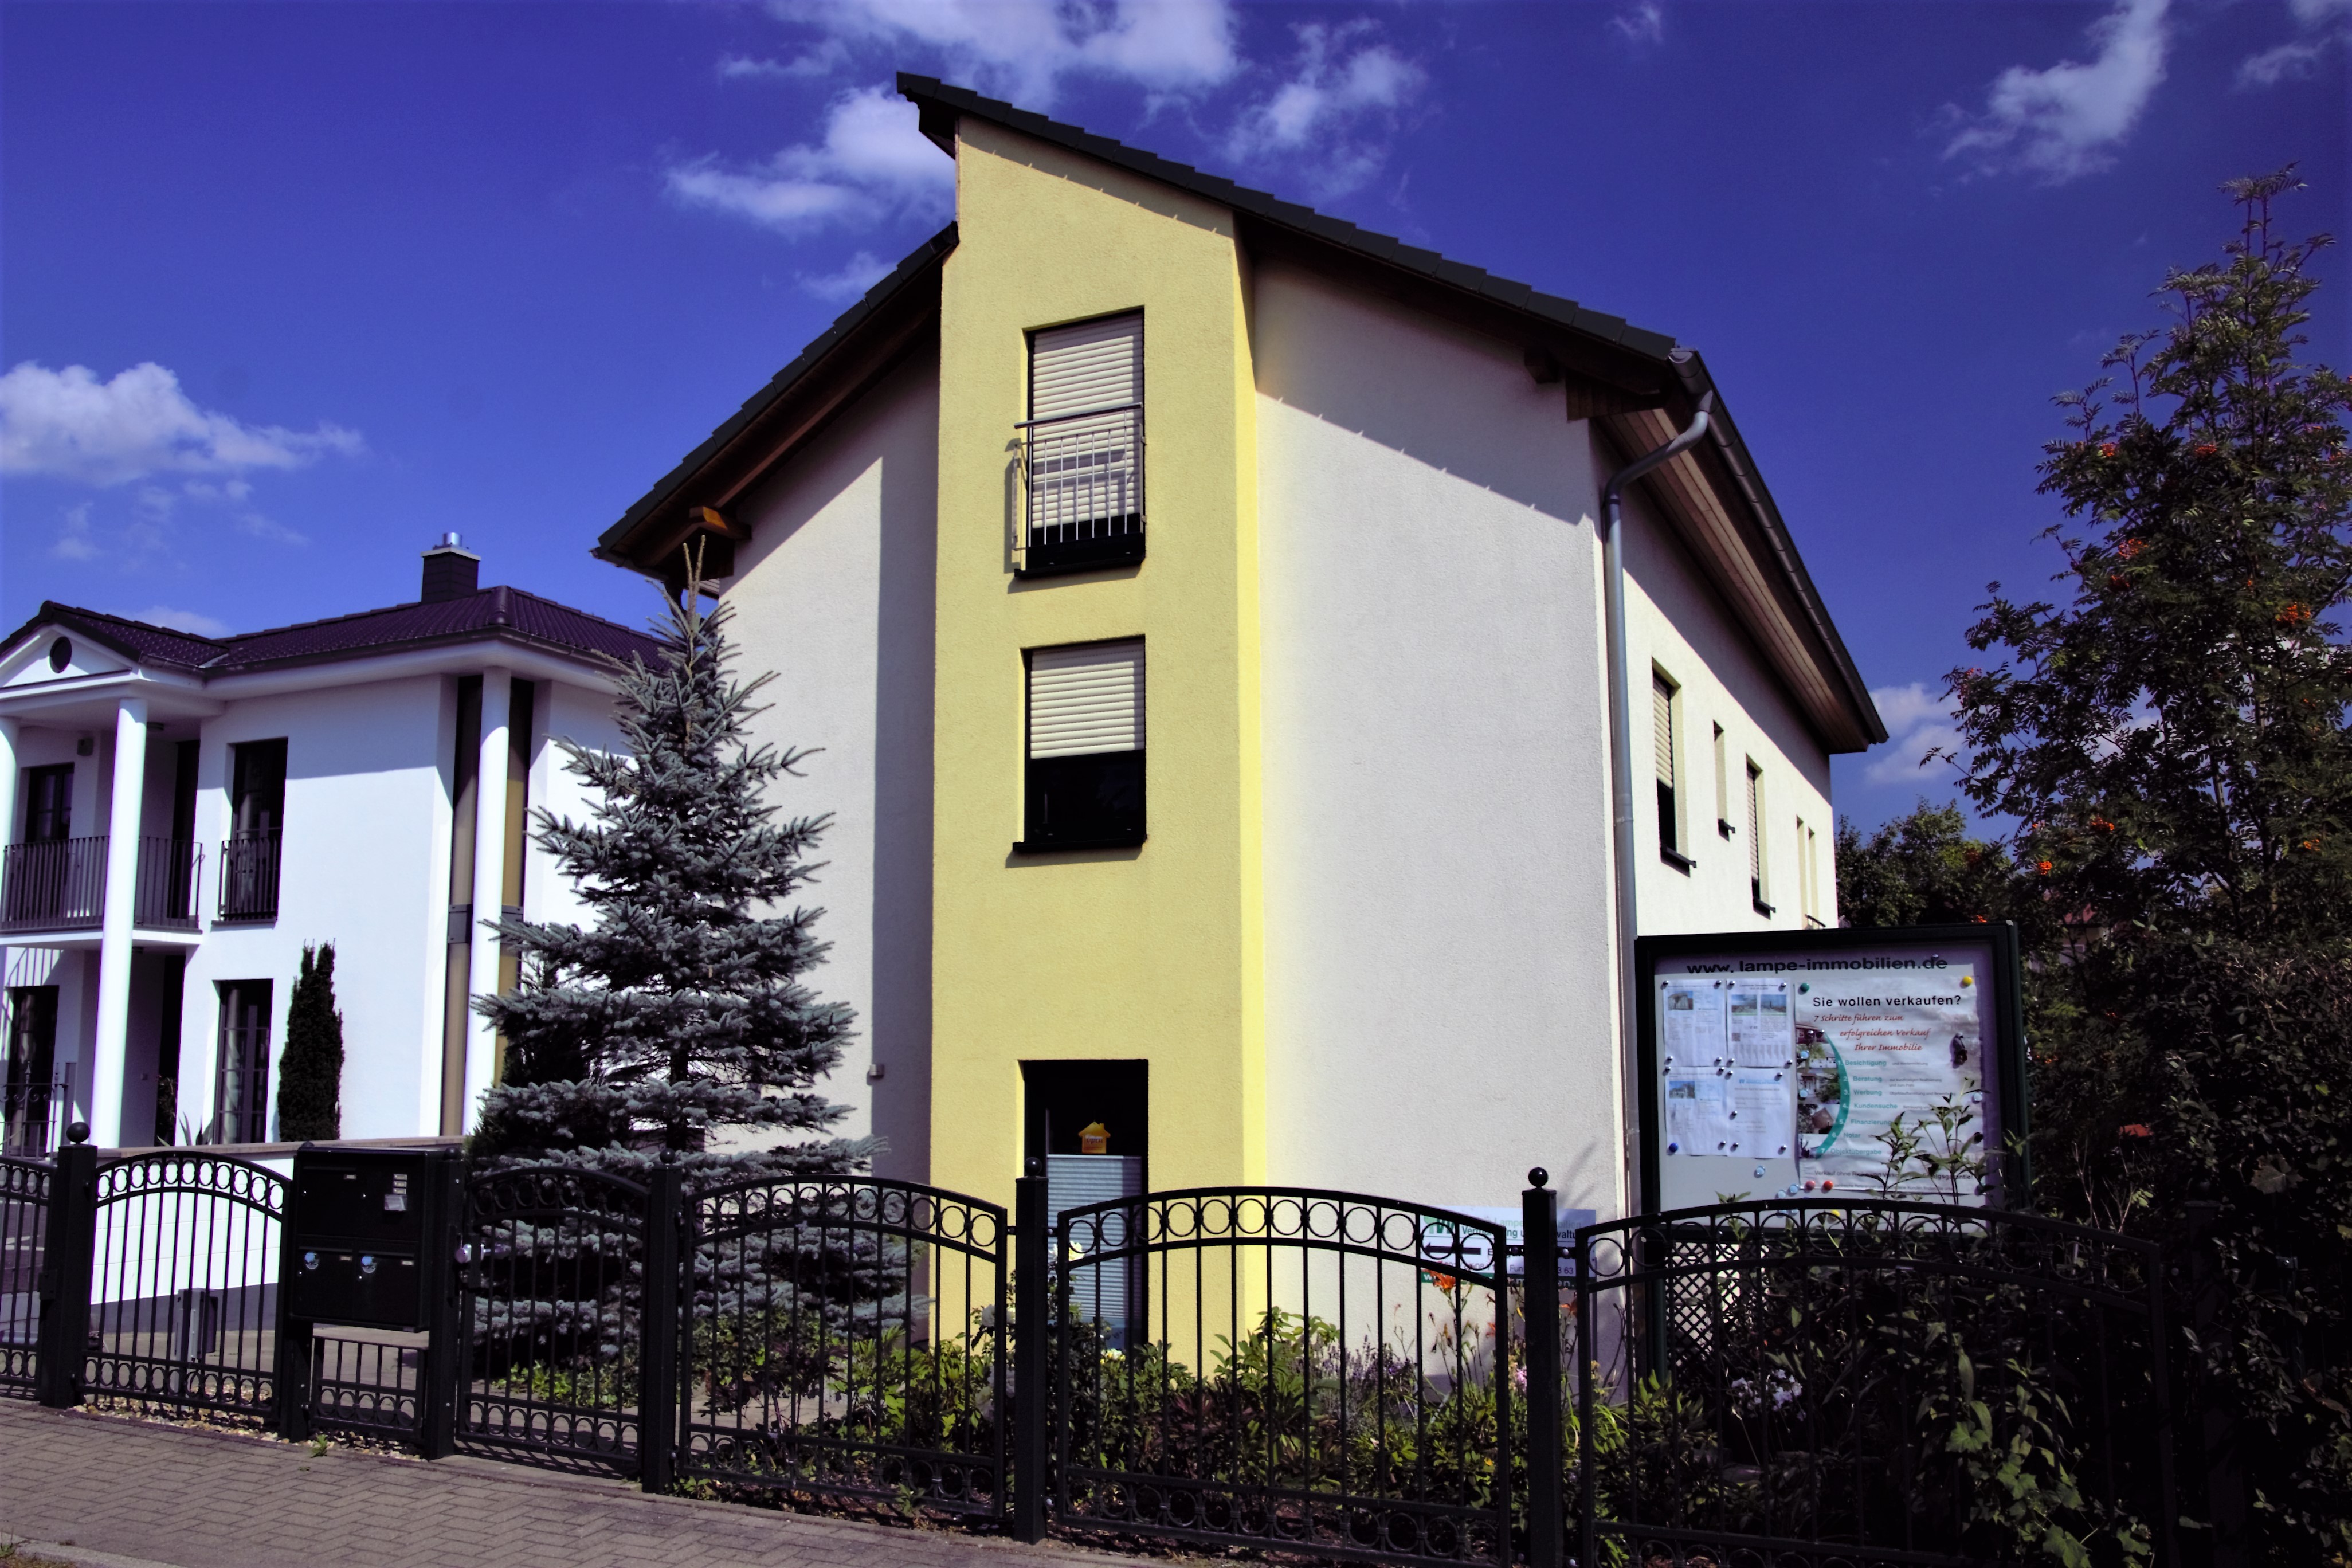 Das Unternehmen Sylvia Lampe Immobilien befindet sich seit 20 Jahren in 39114 Magdeburg, anfänglich in der Babelsberger Str., dann in de Brandtstr. 29 und seit 2013 in der Brandtstr. 18a